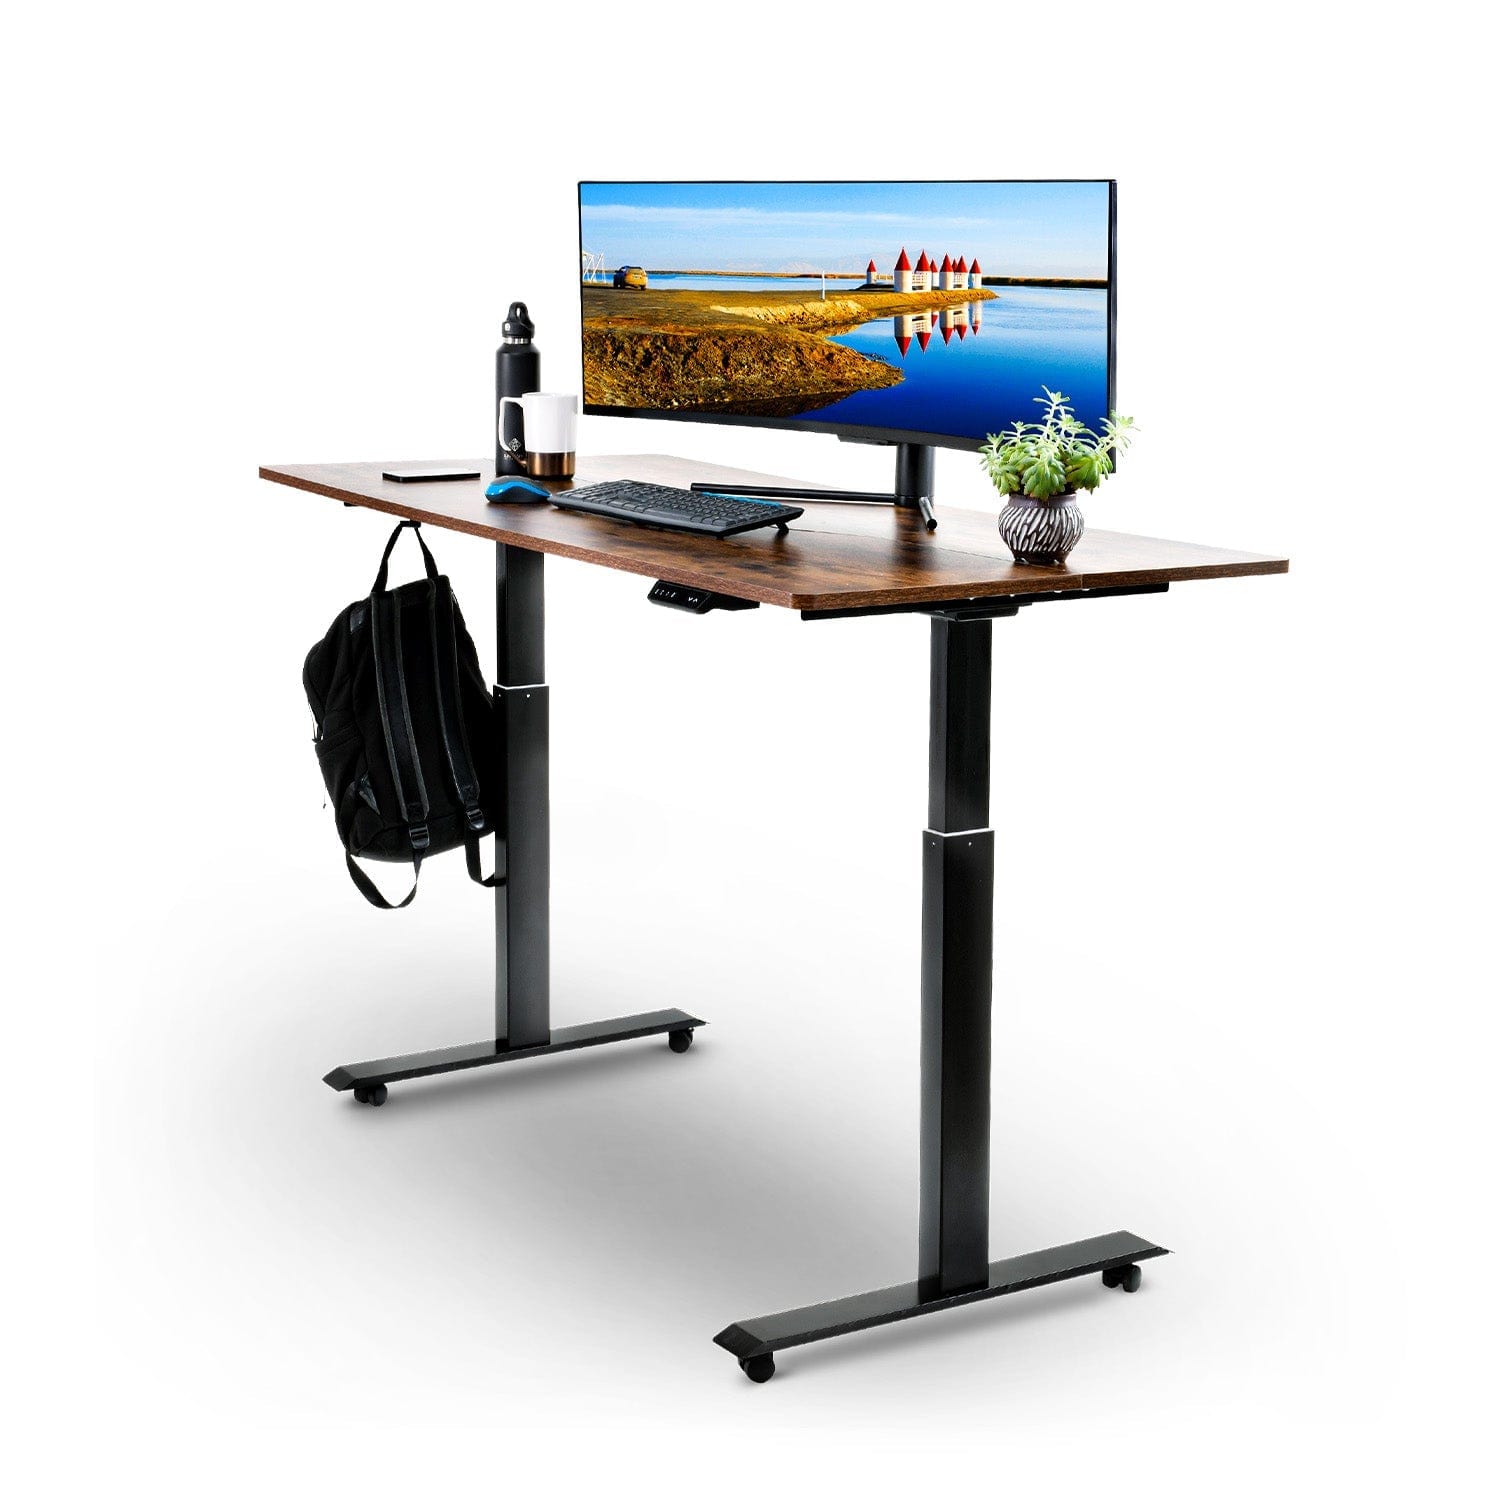 SuperHandy Electric Standing Desk - 63" Width x 30" Depth